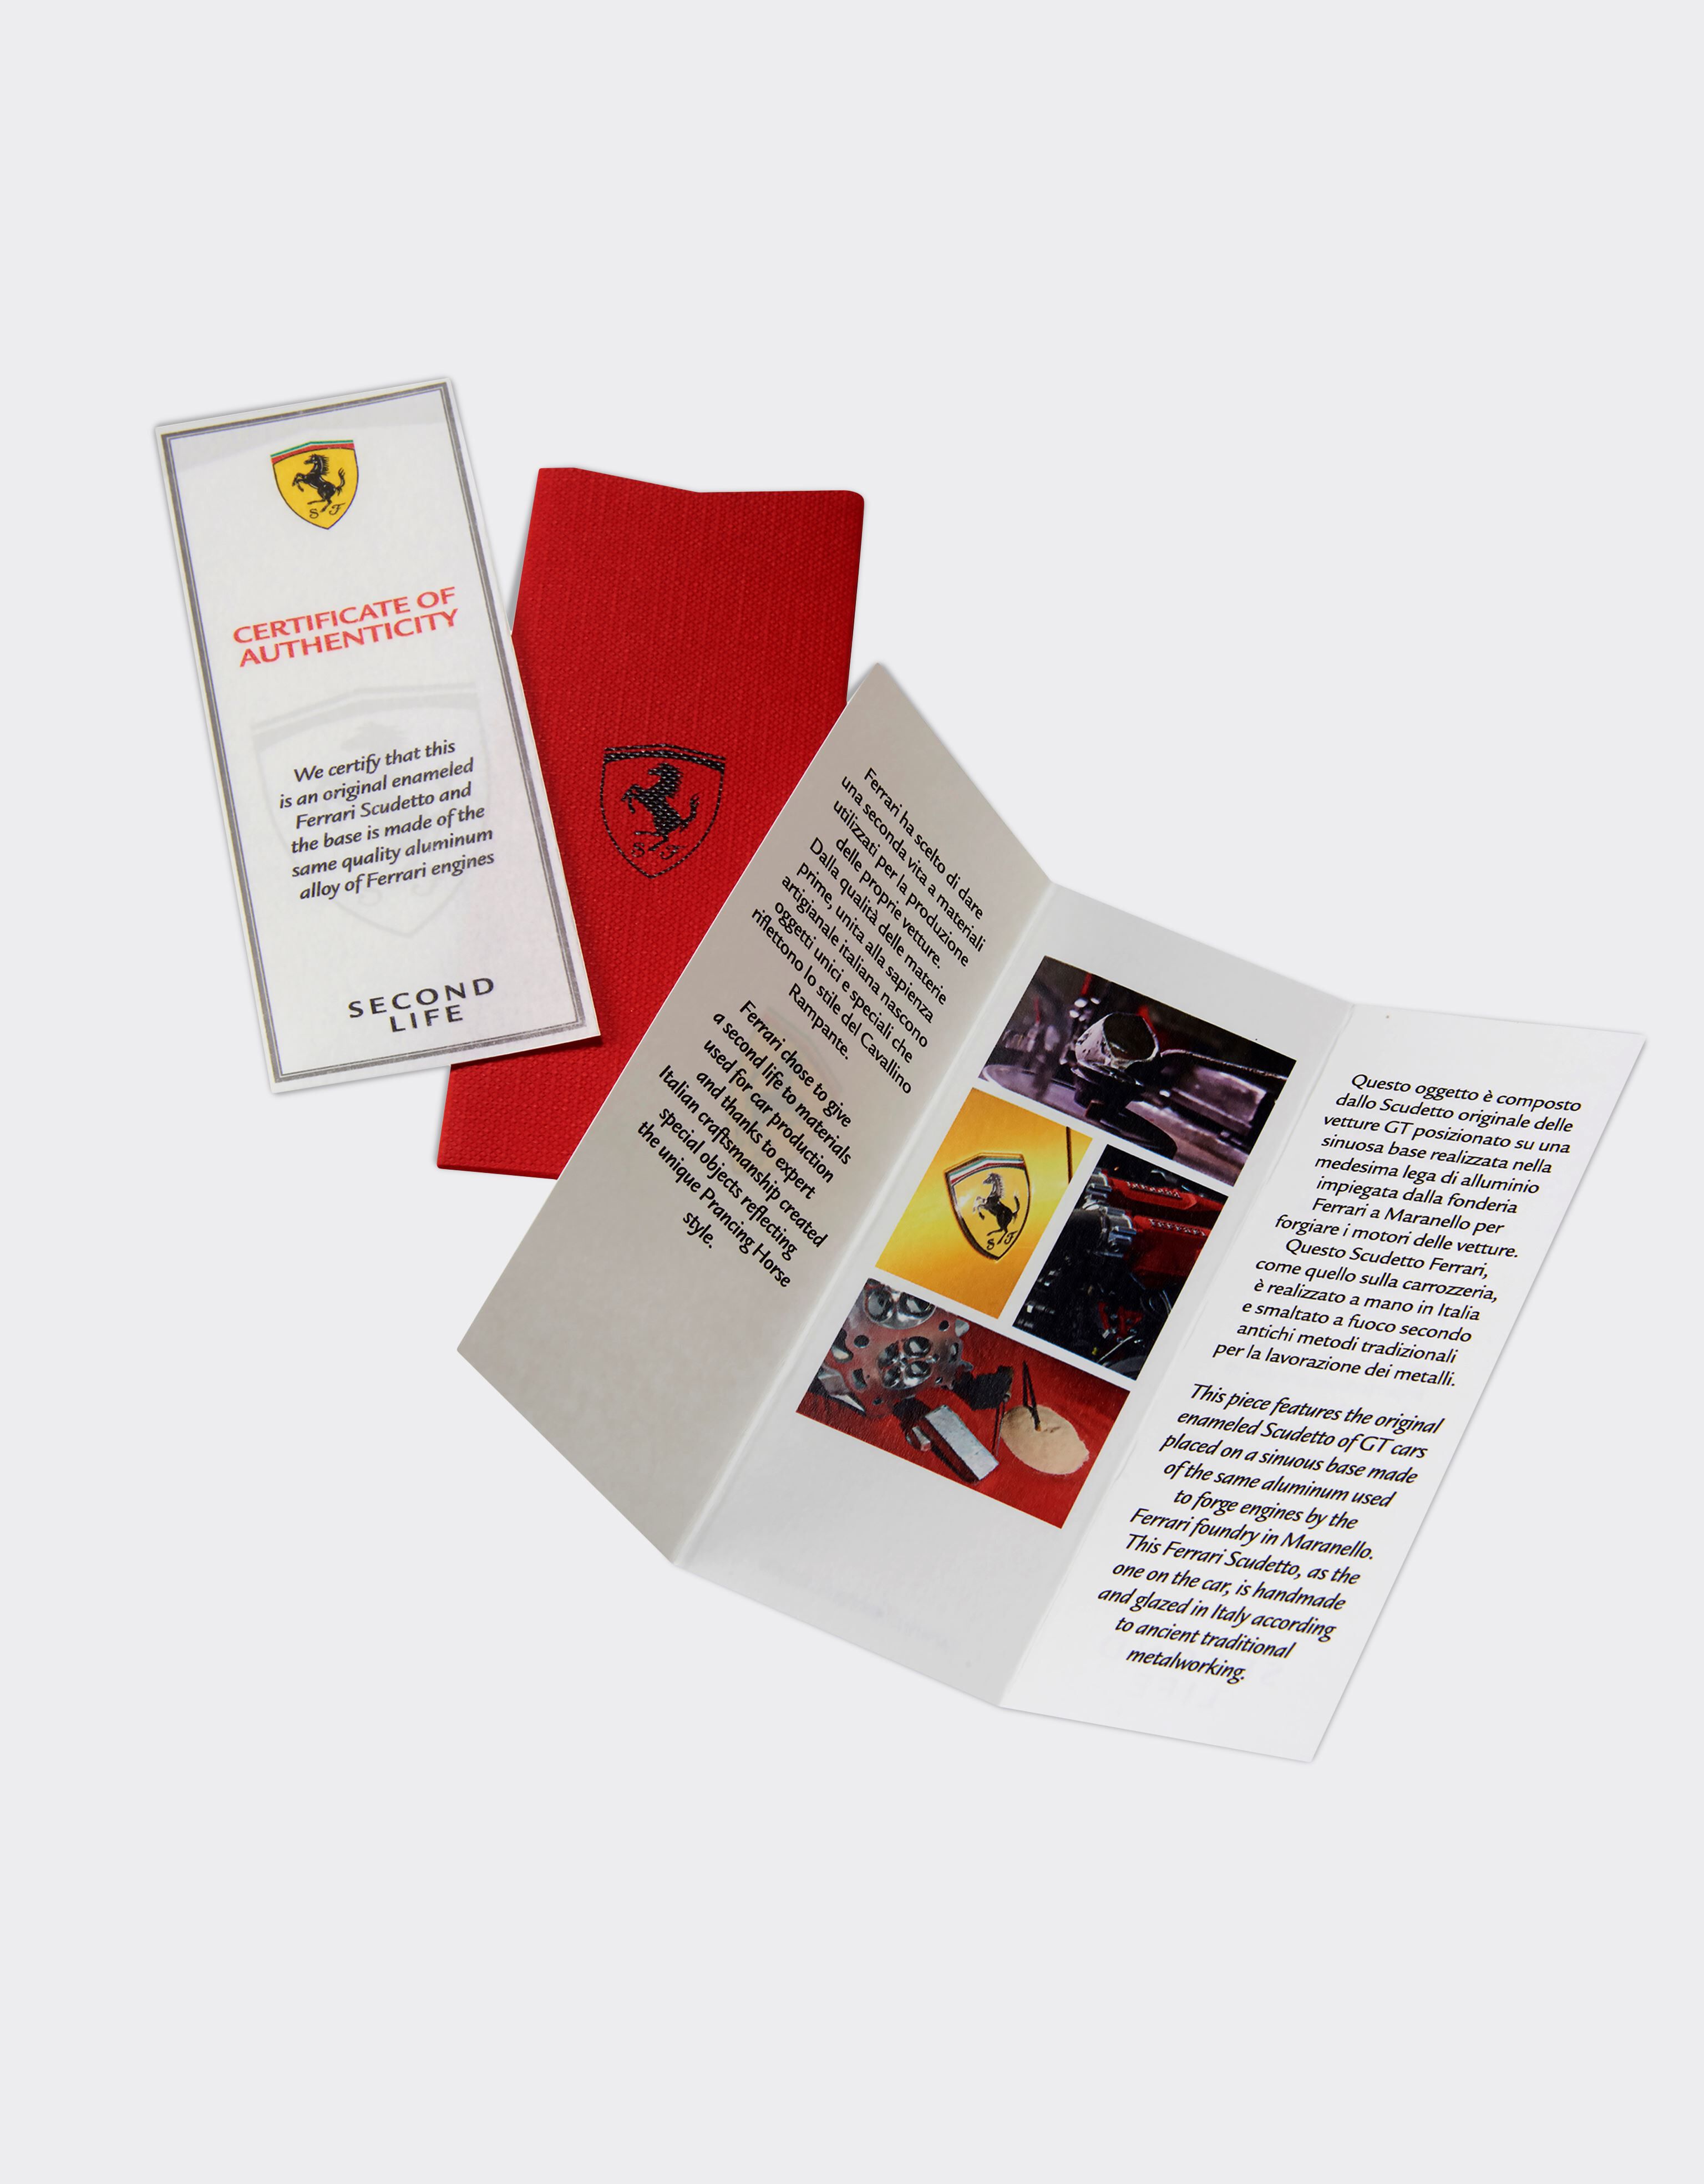 Ferrari Objeto de mesa Second Life con escudo de Ferrari esmaltado Made in Italy Amarillo 47306f